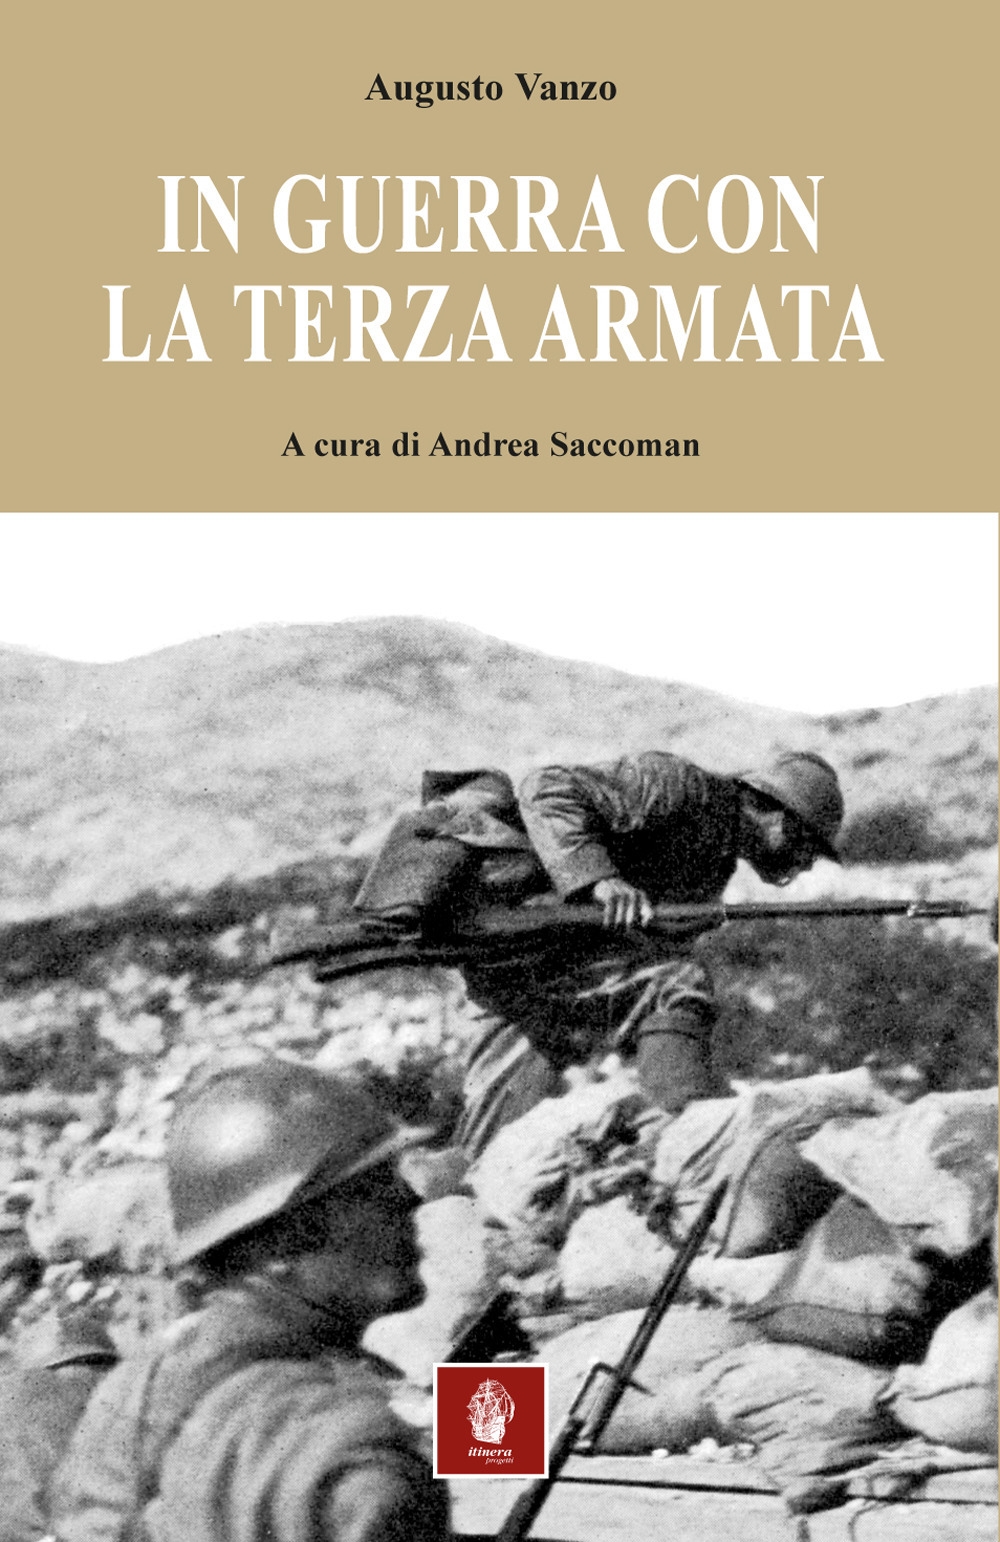 Libri Augusto Vanzo - In Guerra Con La Terza Armata NUOVO SIGILLATO, EDIZIONE DEL 16/11/2017 SUBITO DISPONIBILE